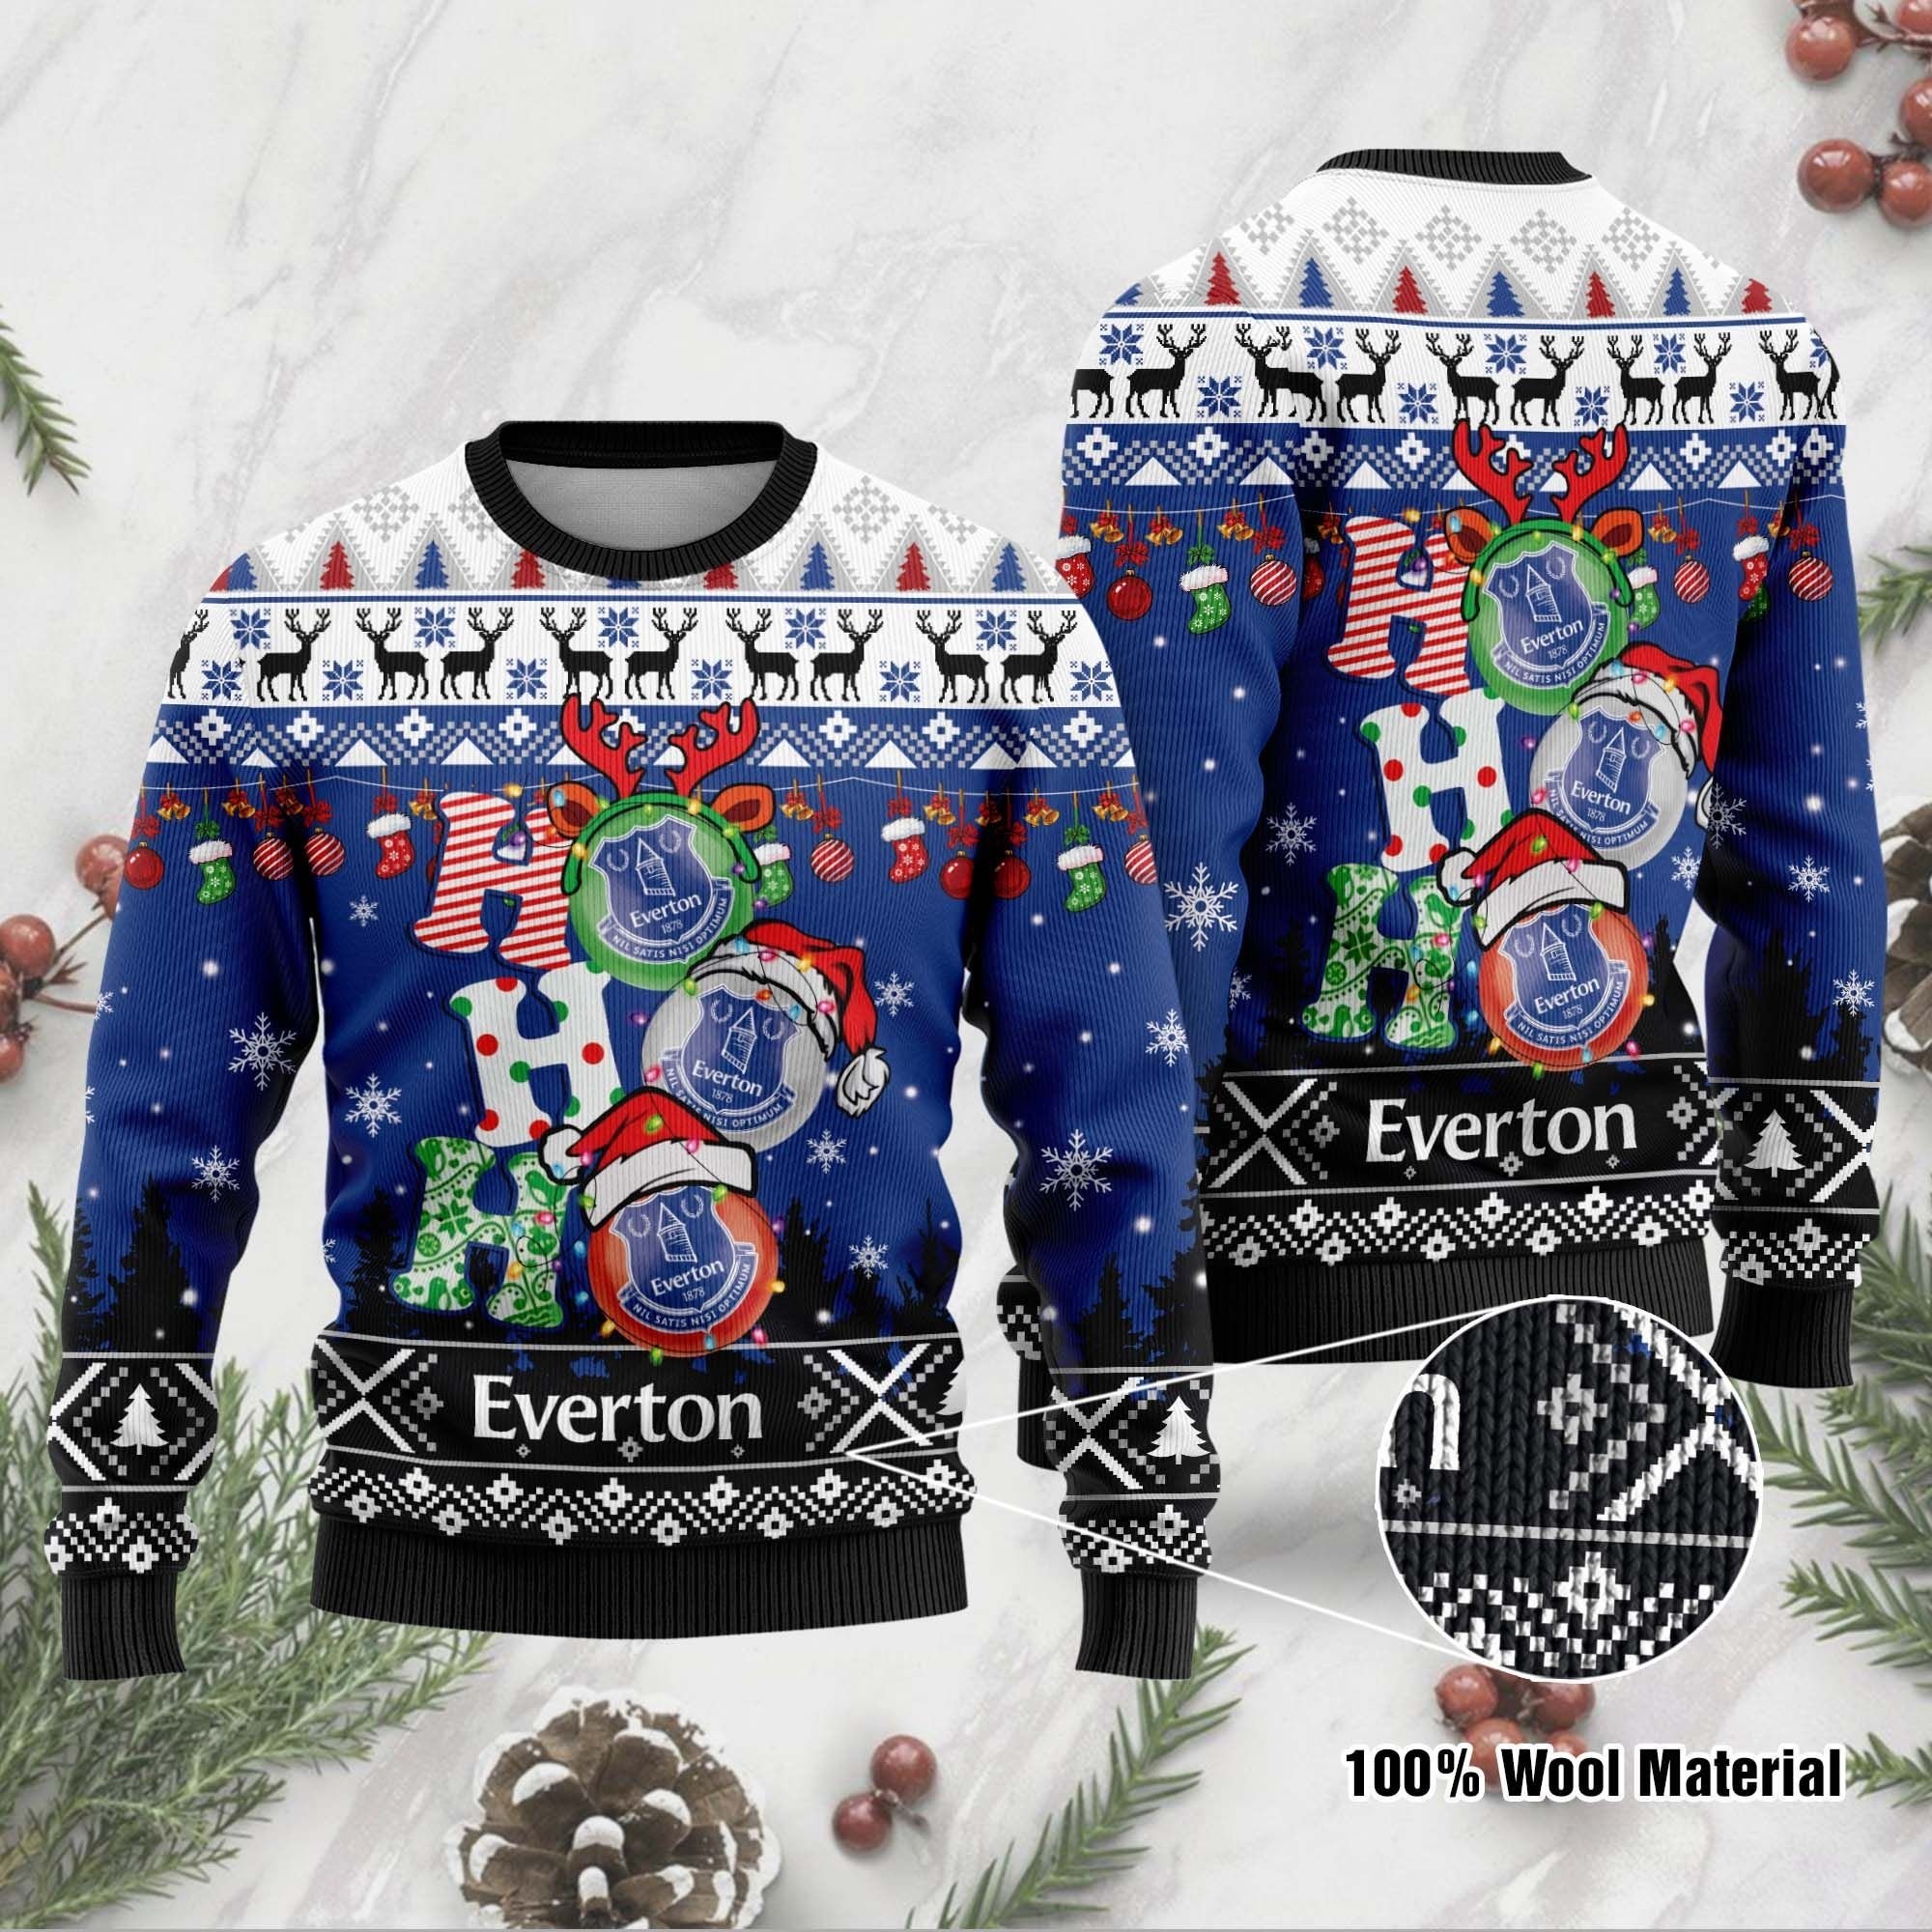 Everton FC Ho Ho Ho ugly christmas sweater